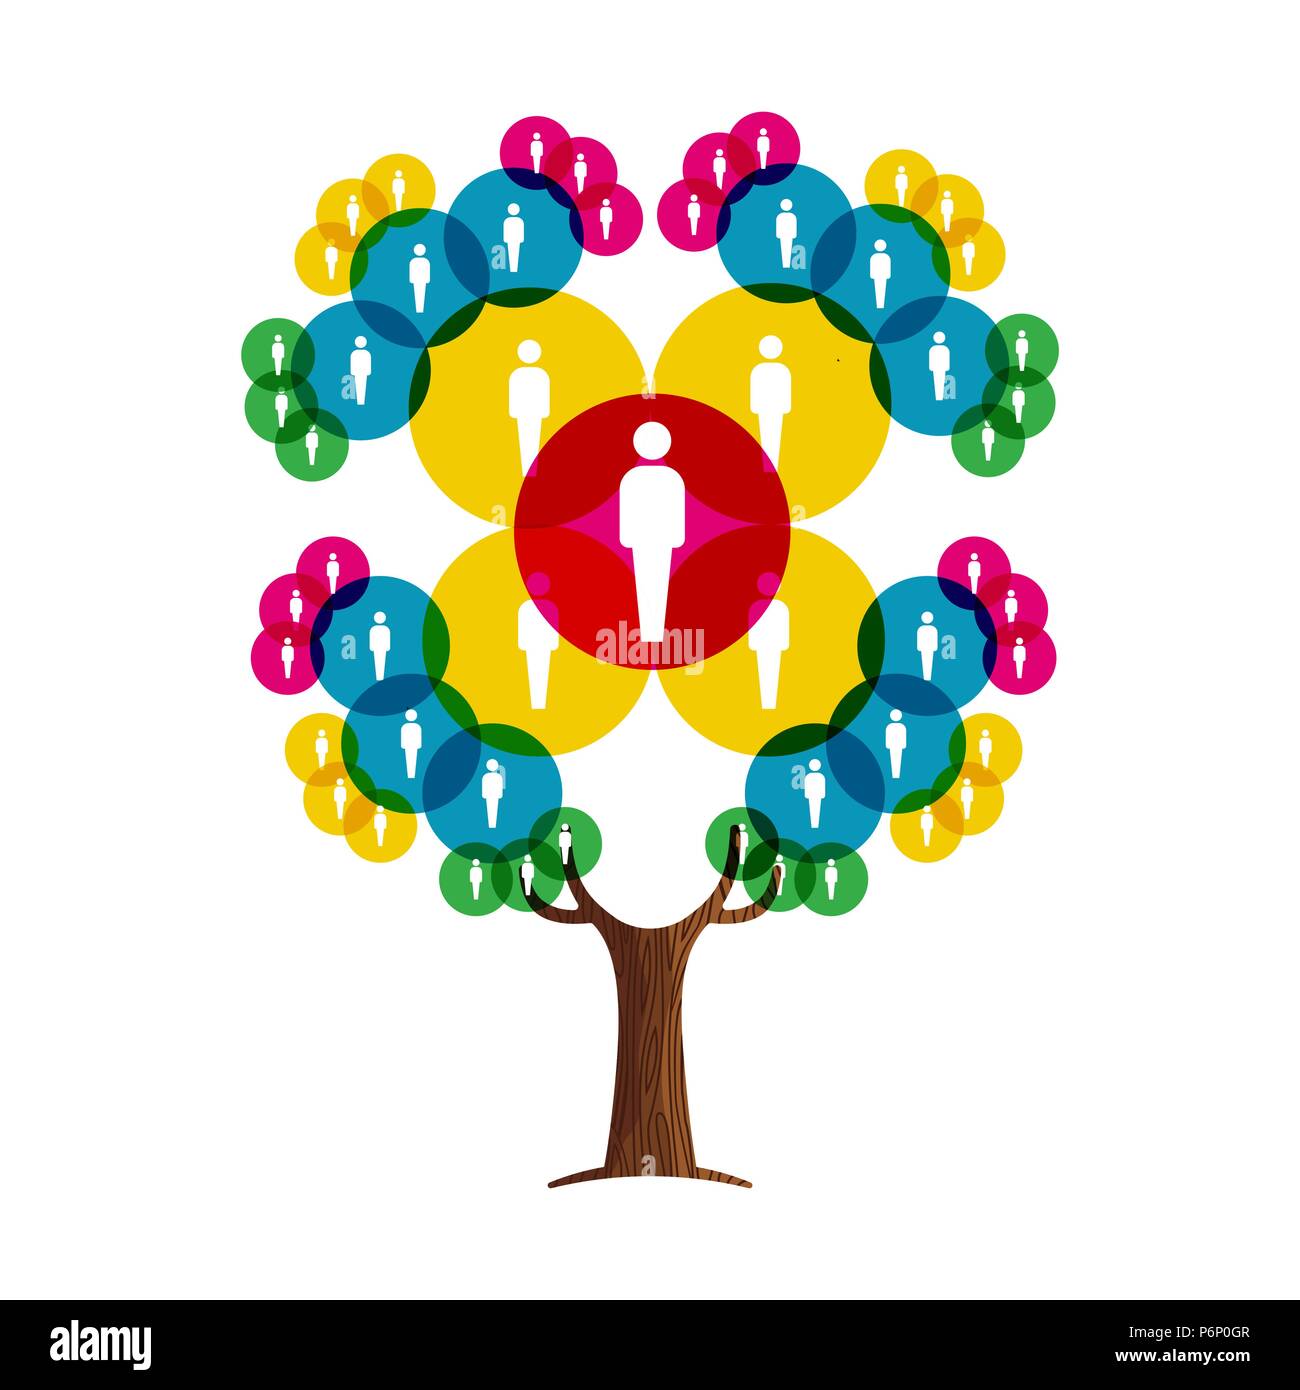 Baum aus online Menschen Profil Avatare. Konzept Abbildung für die Gemeinschaft helfen, soziale Netzwerk Projekt oder Kommunikation über das Internet. EPS 10 Vektor. Stock Vektor